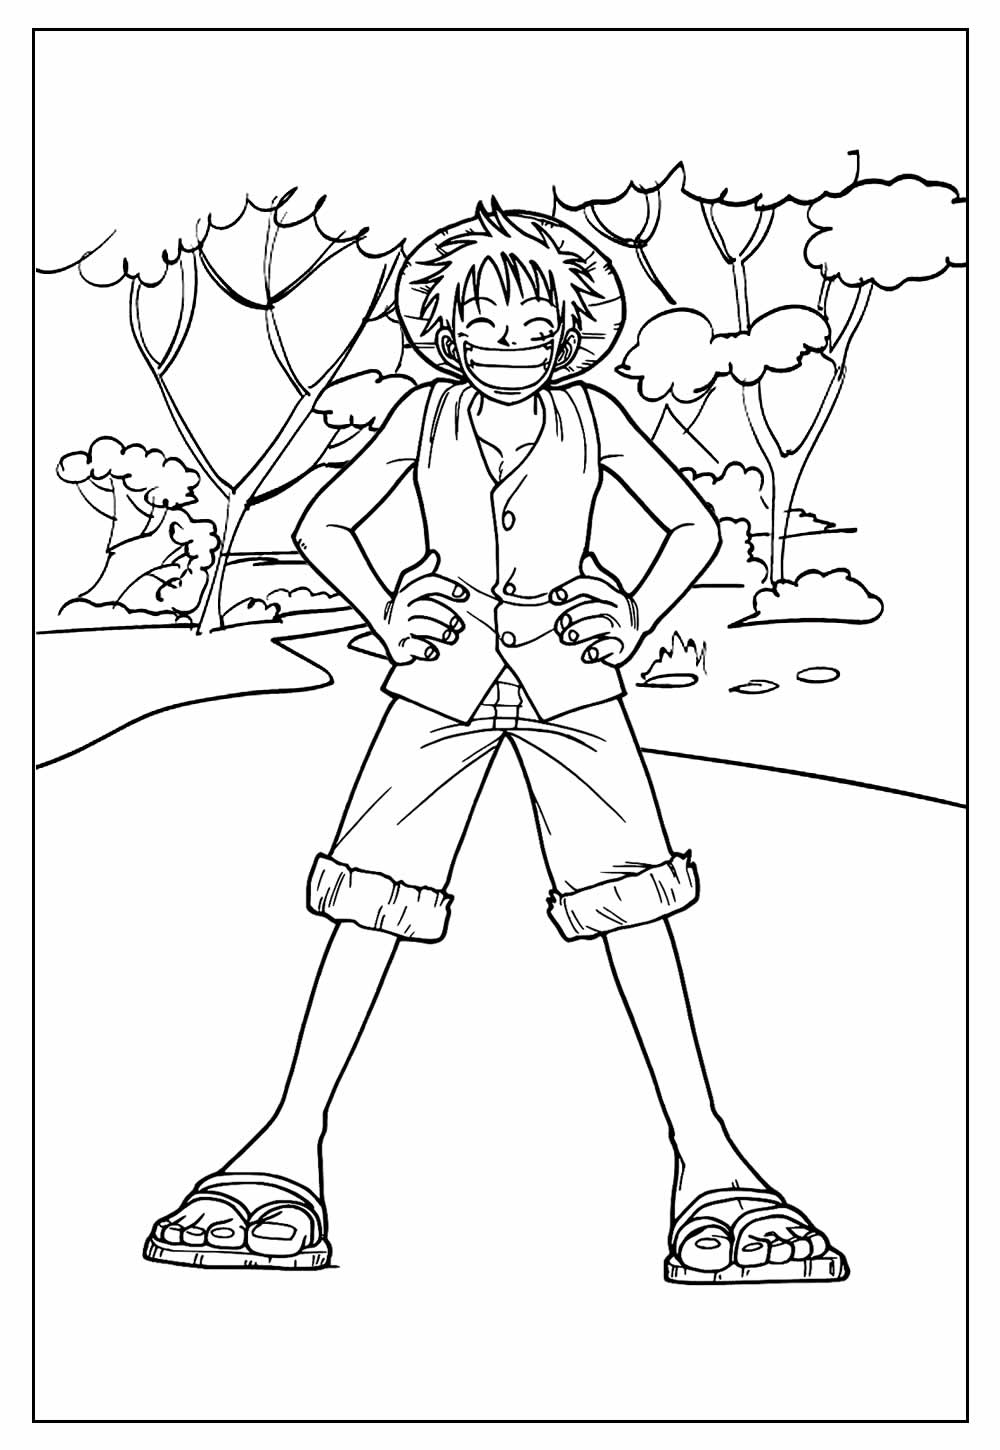 Desenho do Luffy para pintar